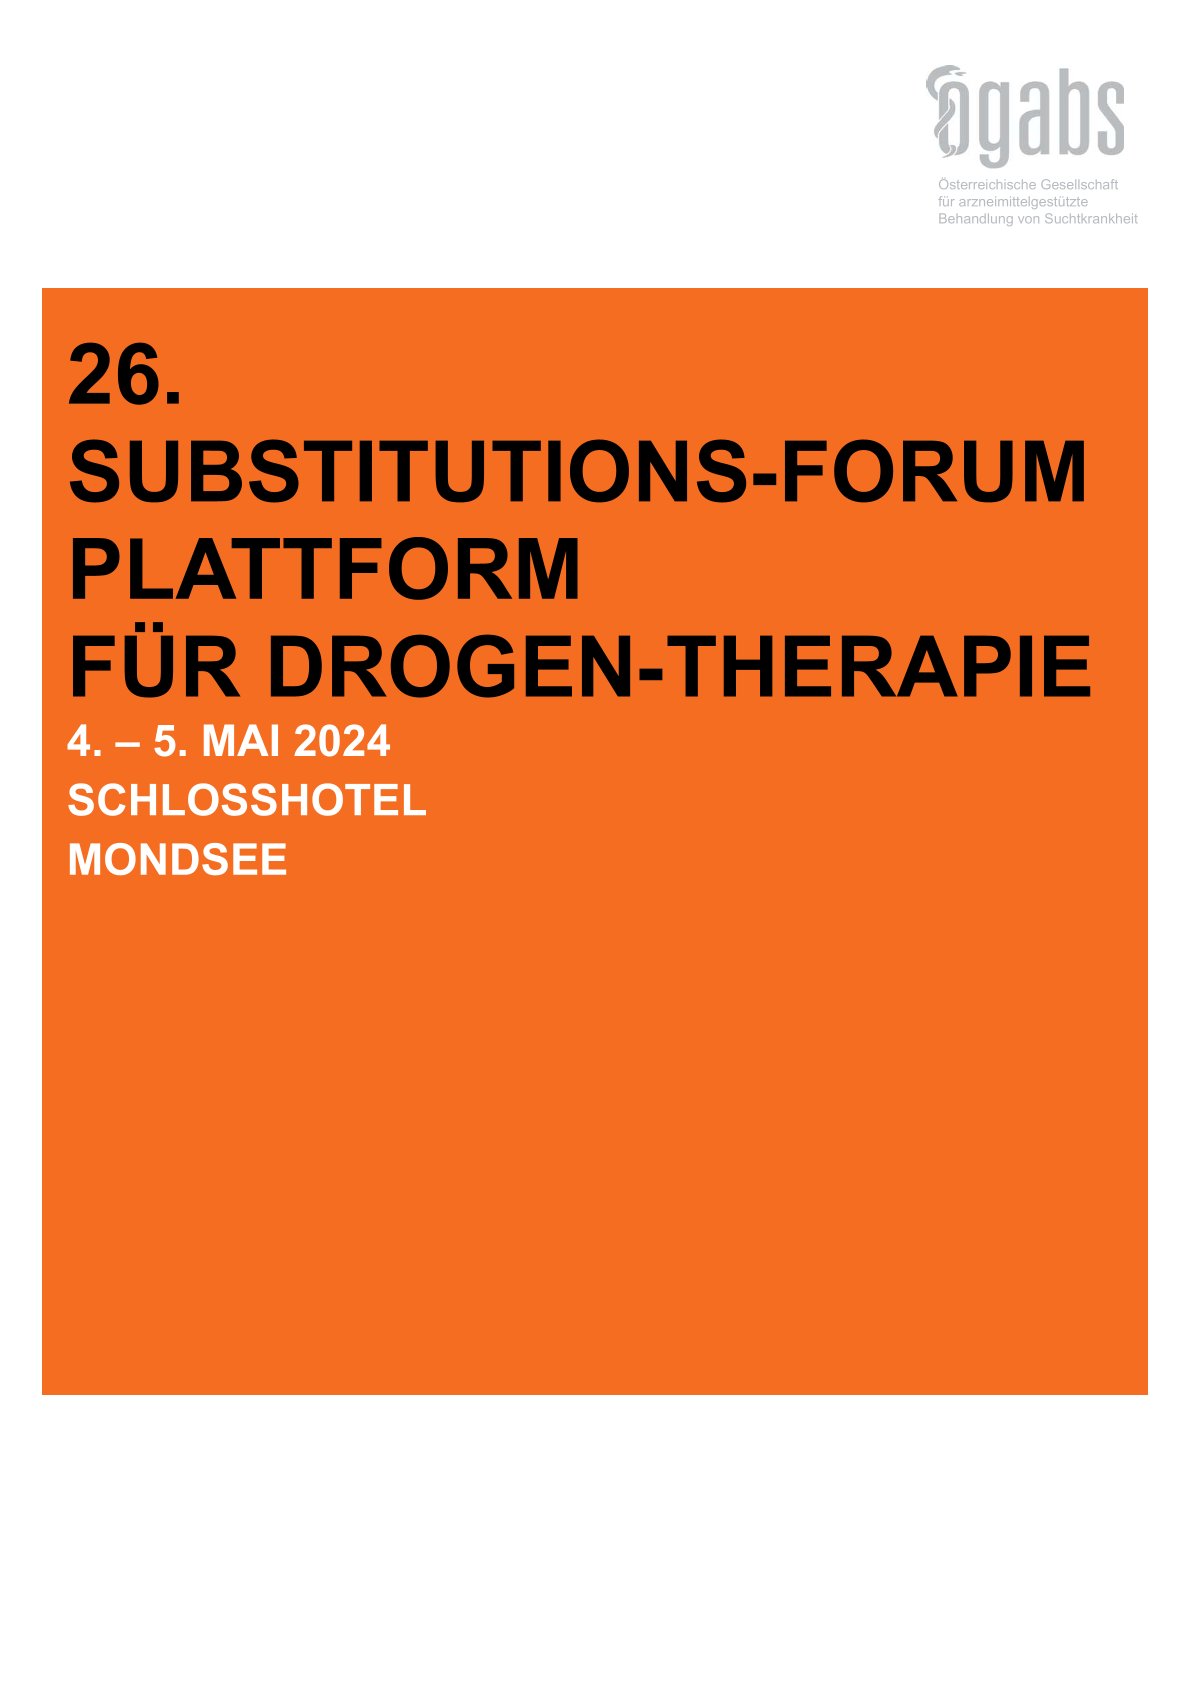 26. Substitutions-Forum